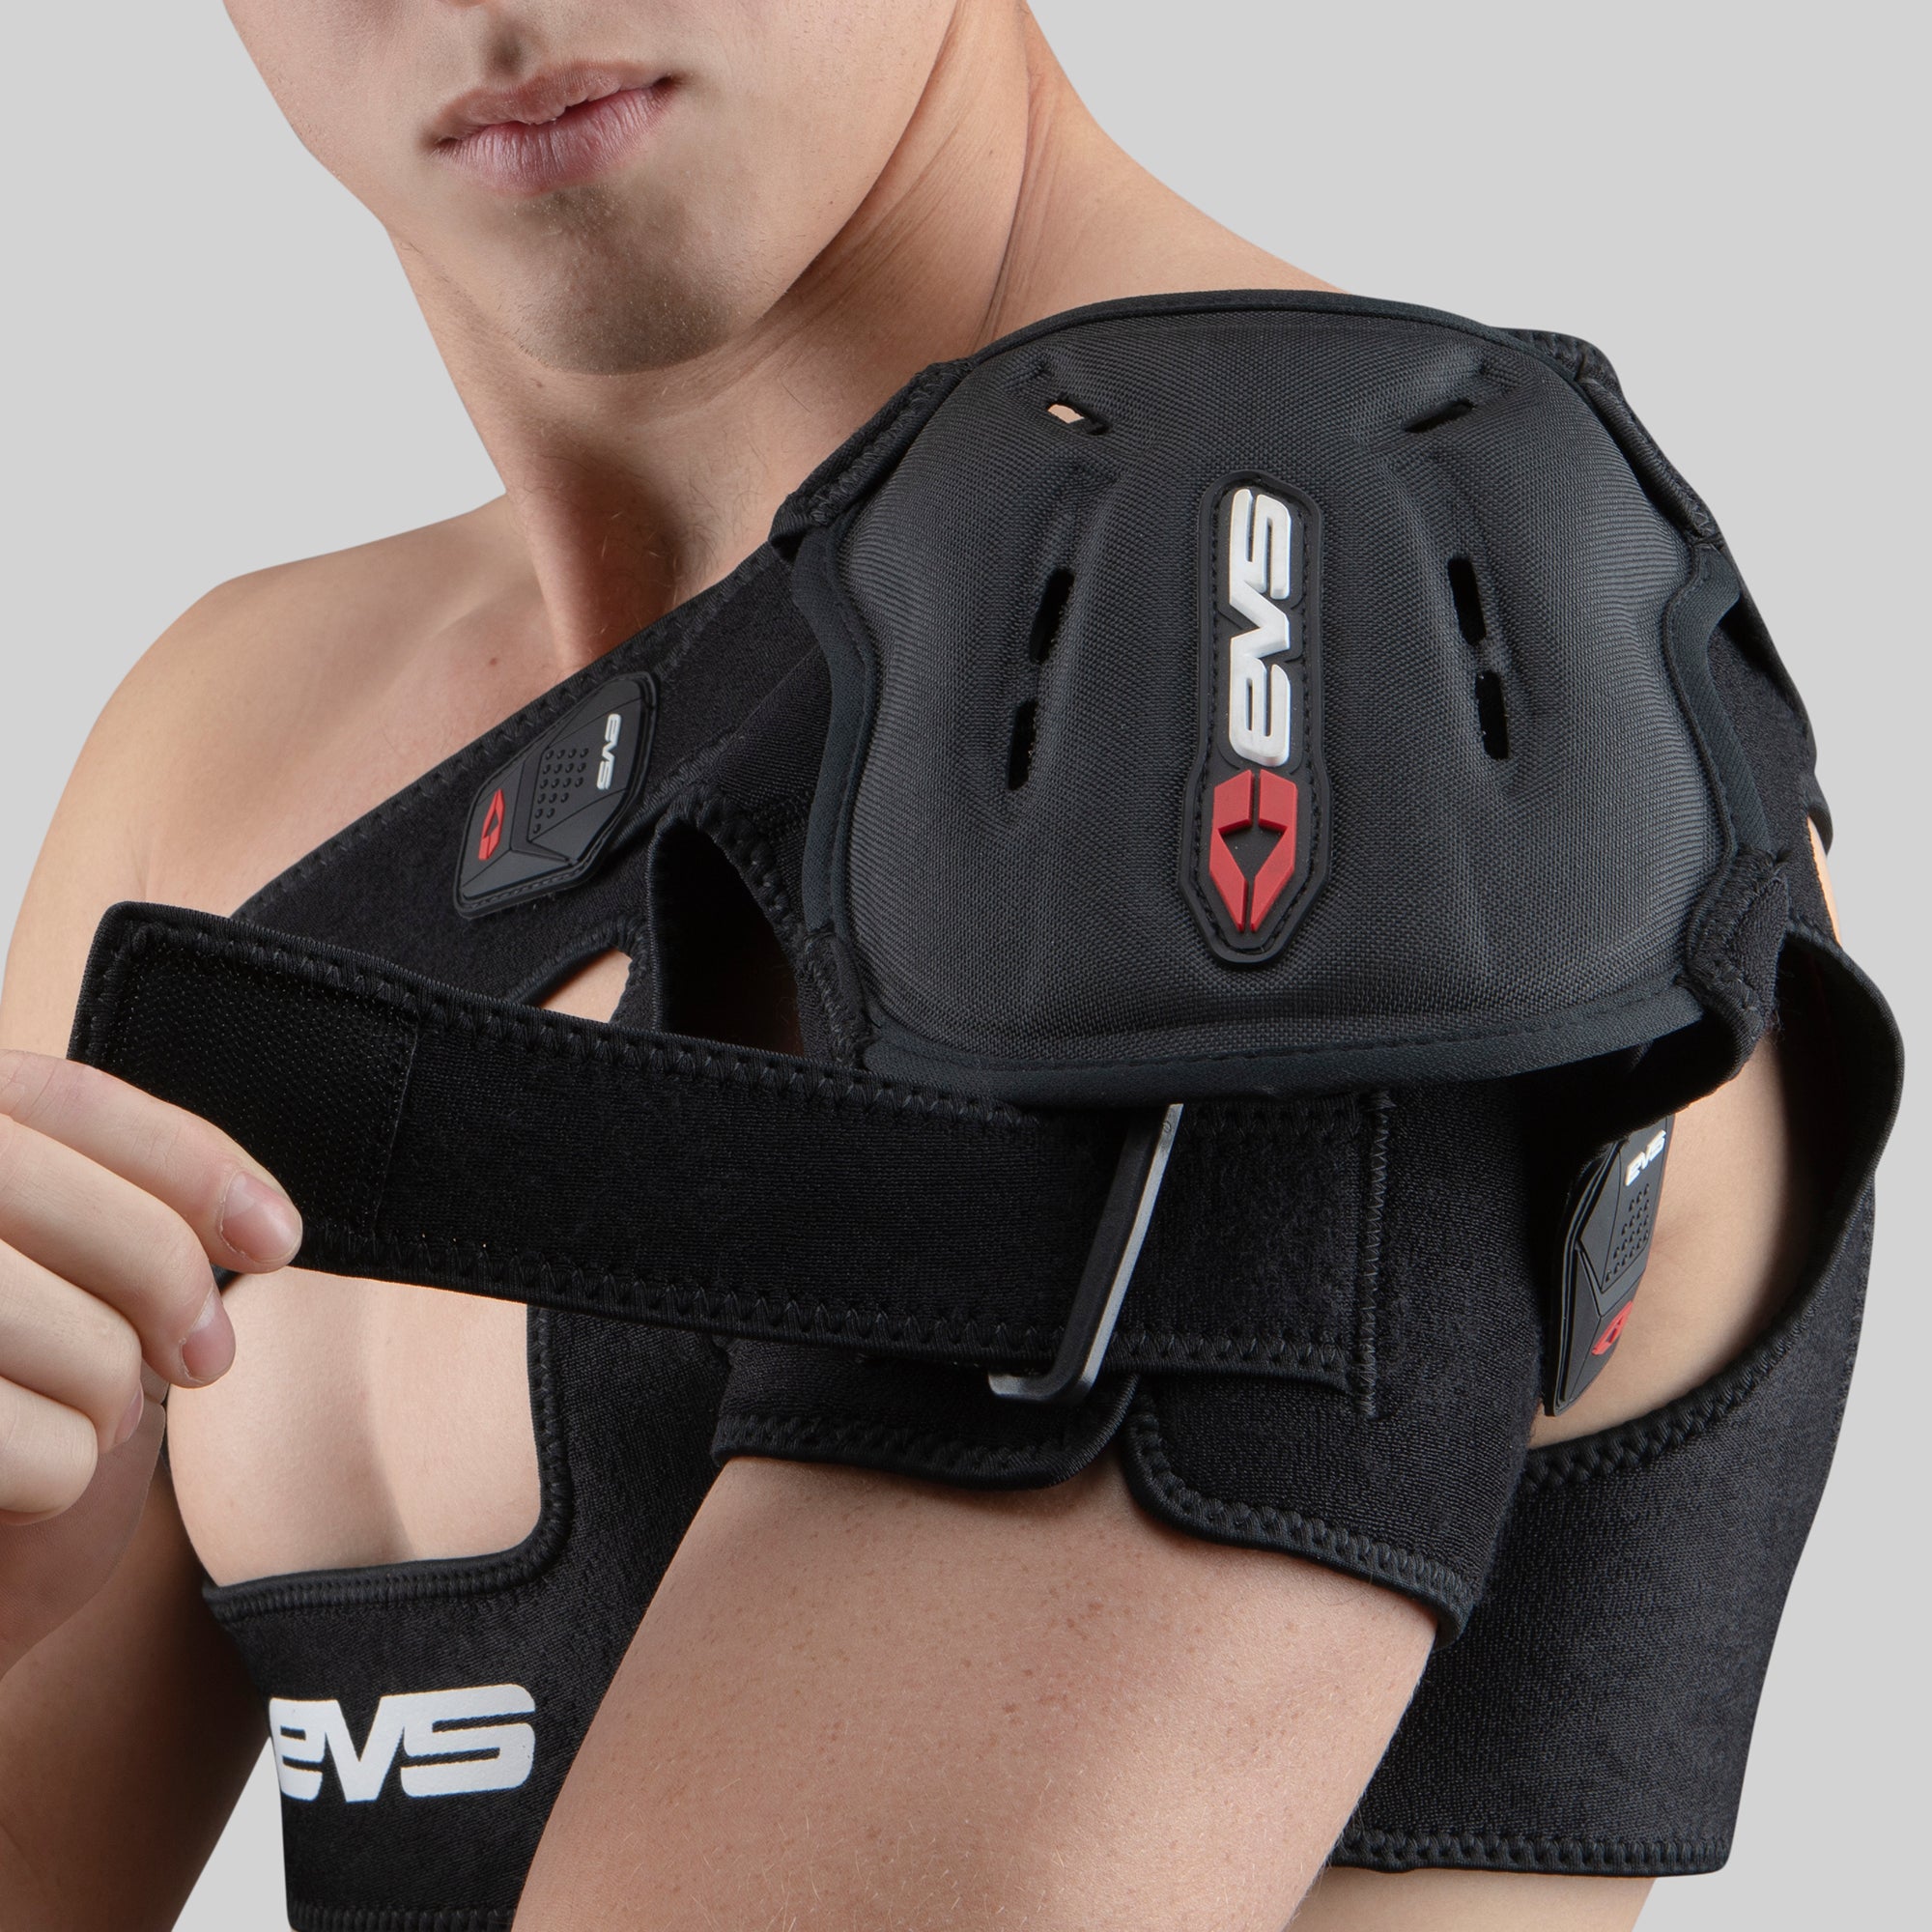  EVS Sports SB04-S Shoulder Brace (Small), Black : Automotive